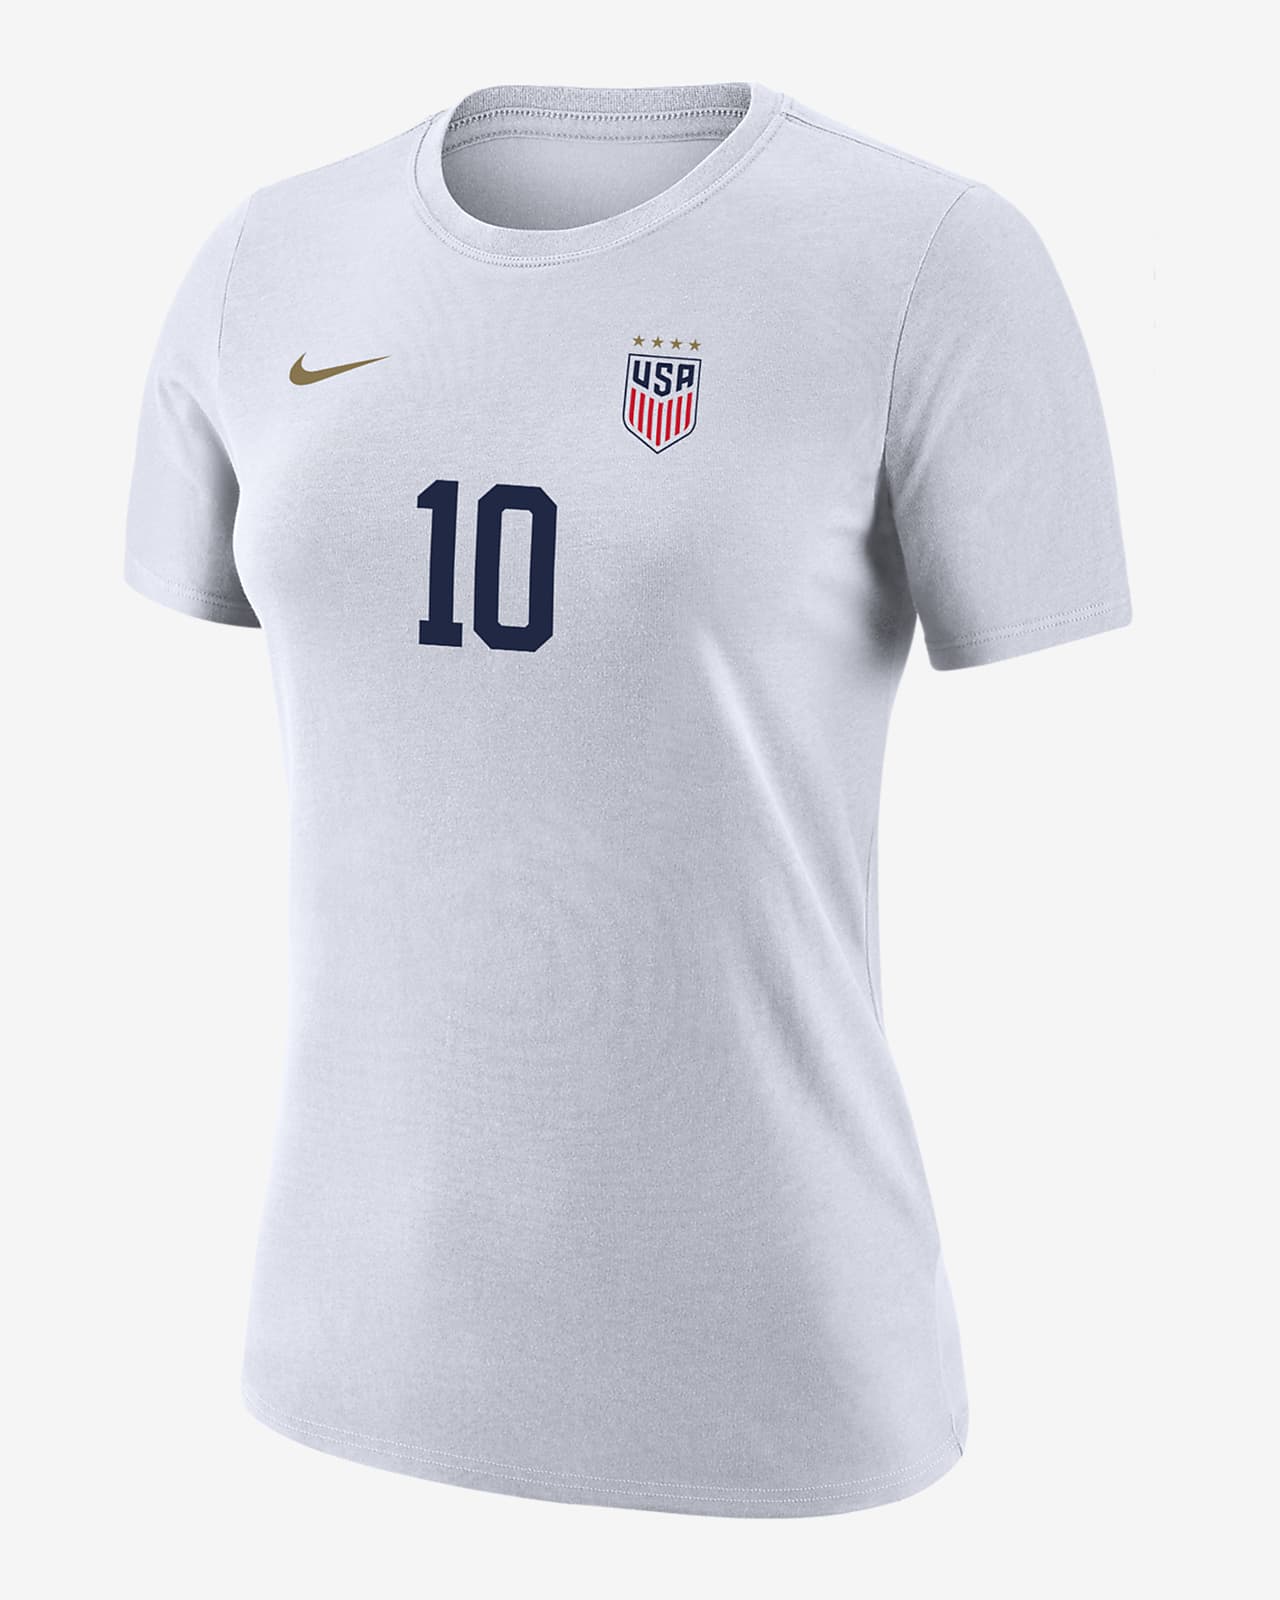 Lindsey Horan USWNT Women's Nike Soccer T-Shirt